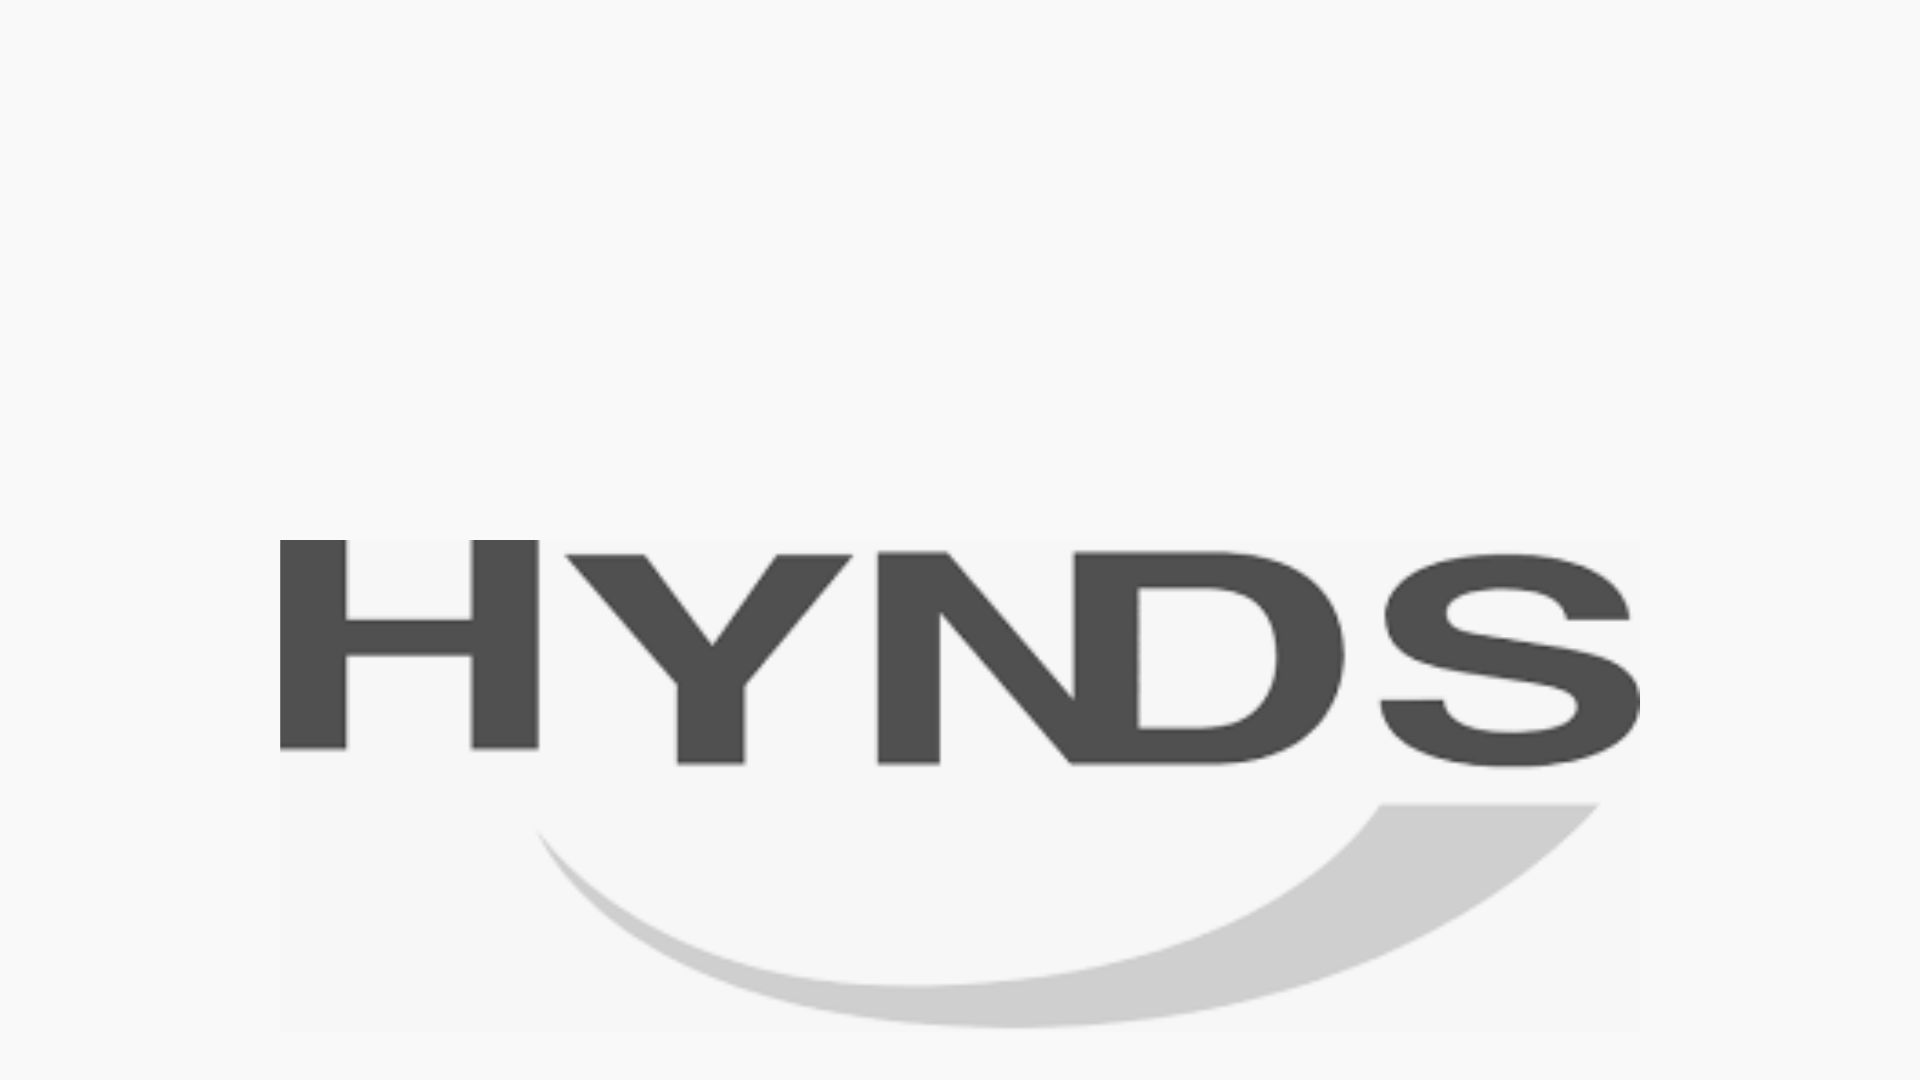 Hynds Foundation